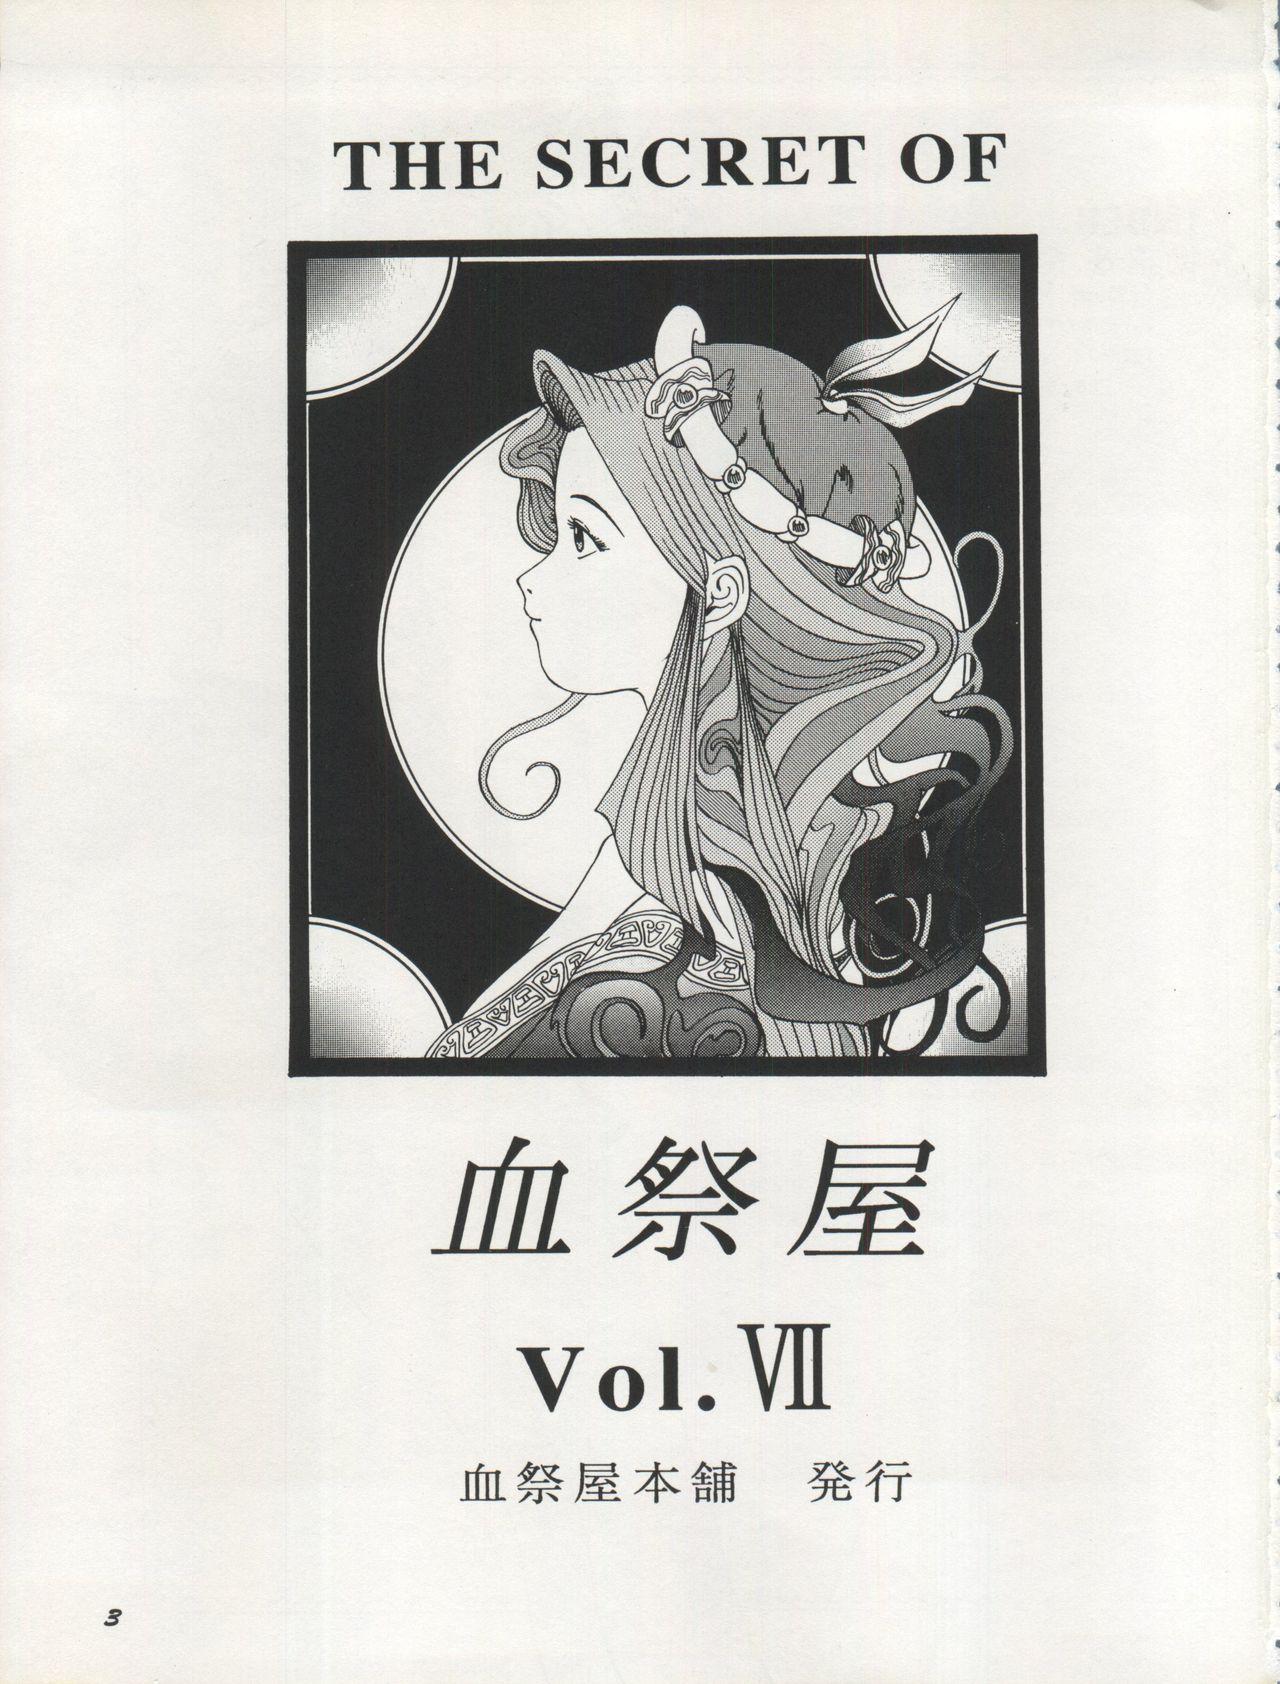 The Secret of Chimatsuriya Vol. VII 2